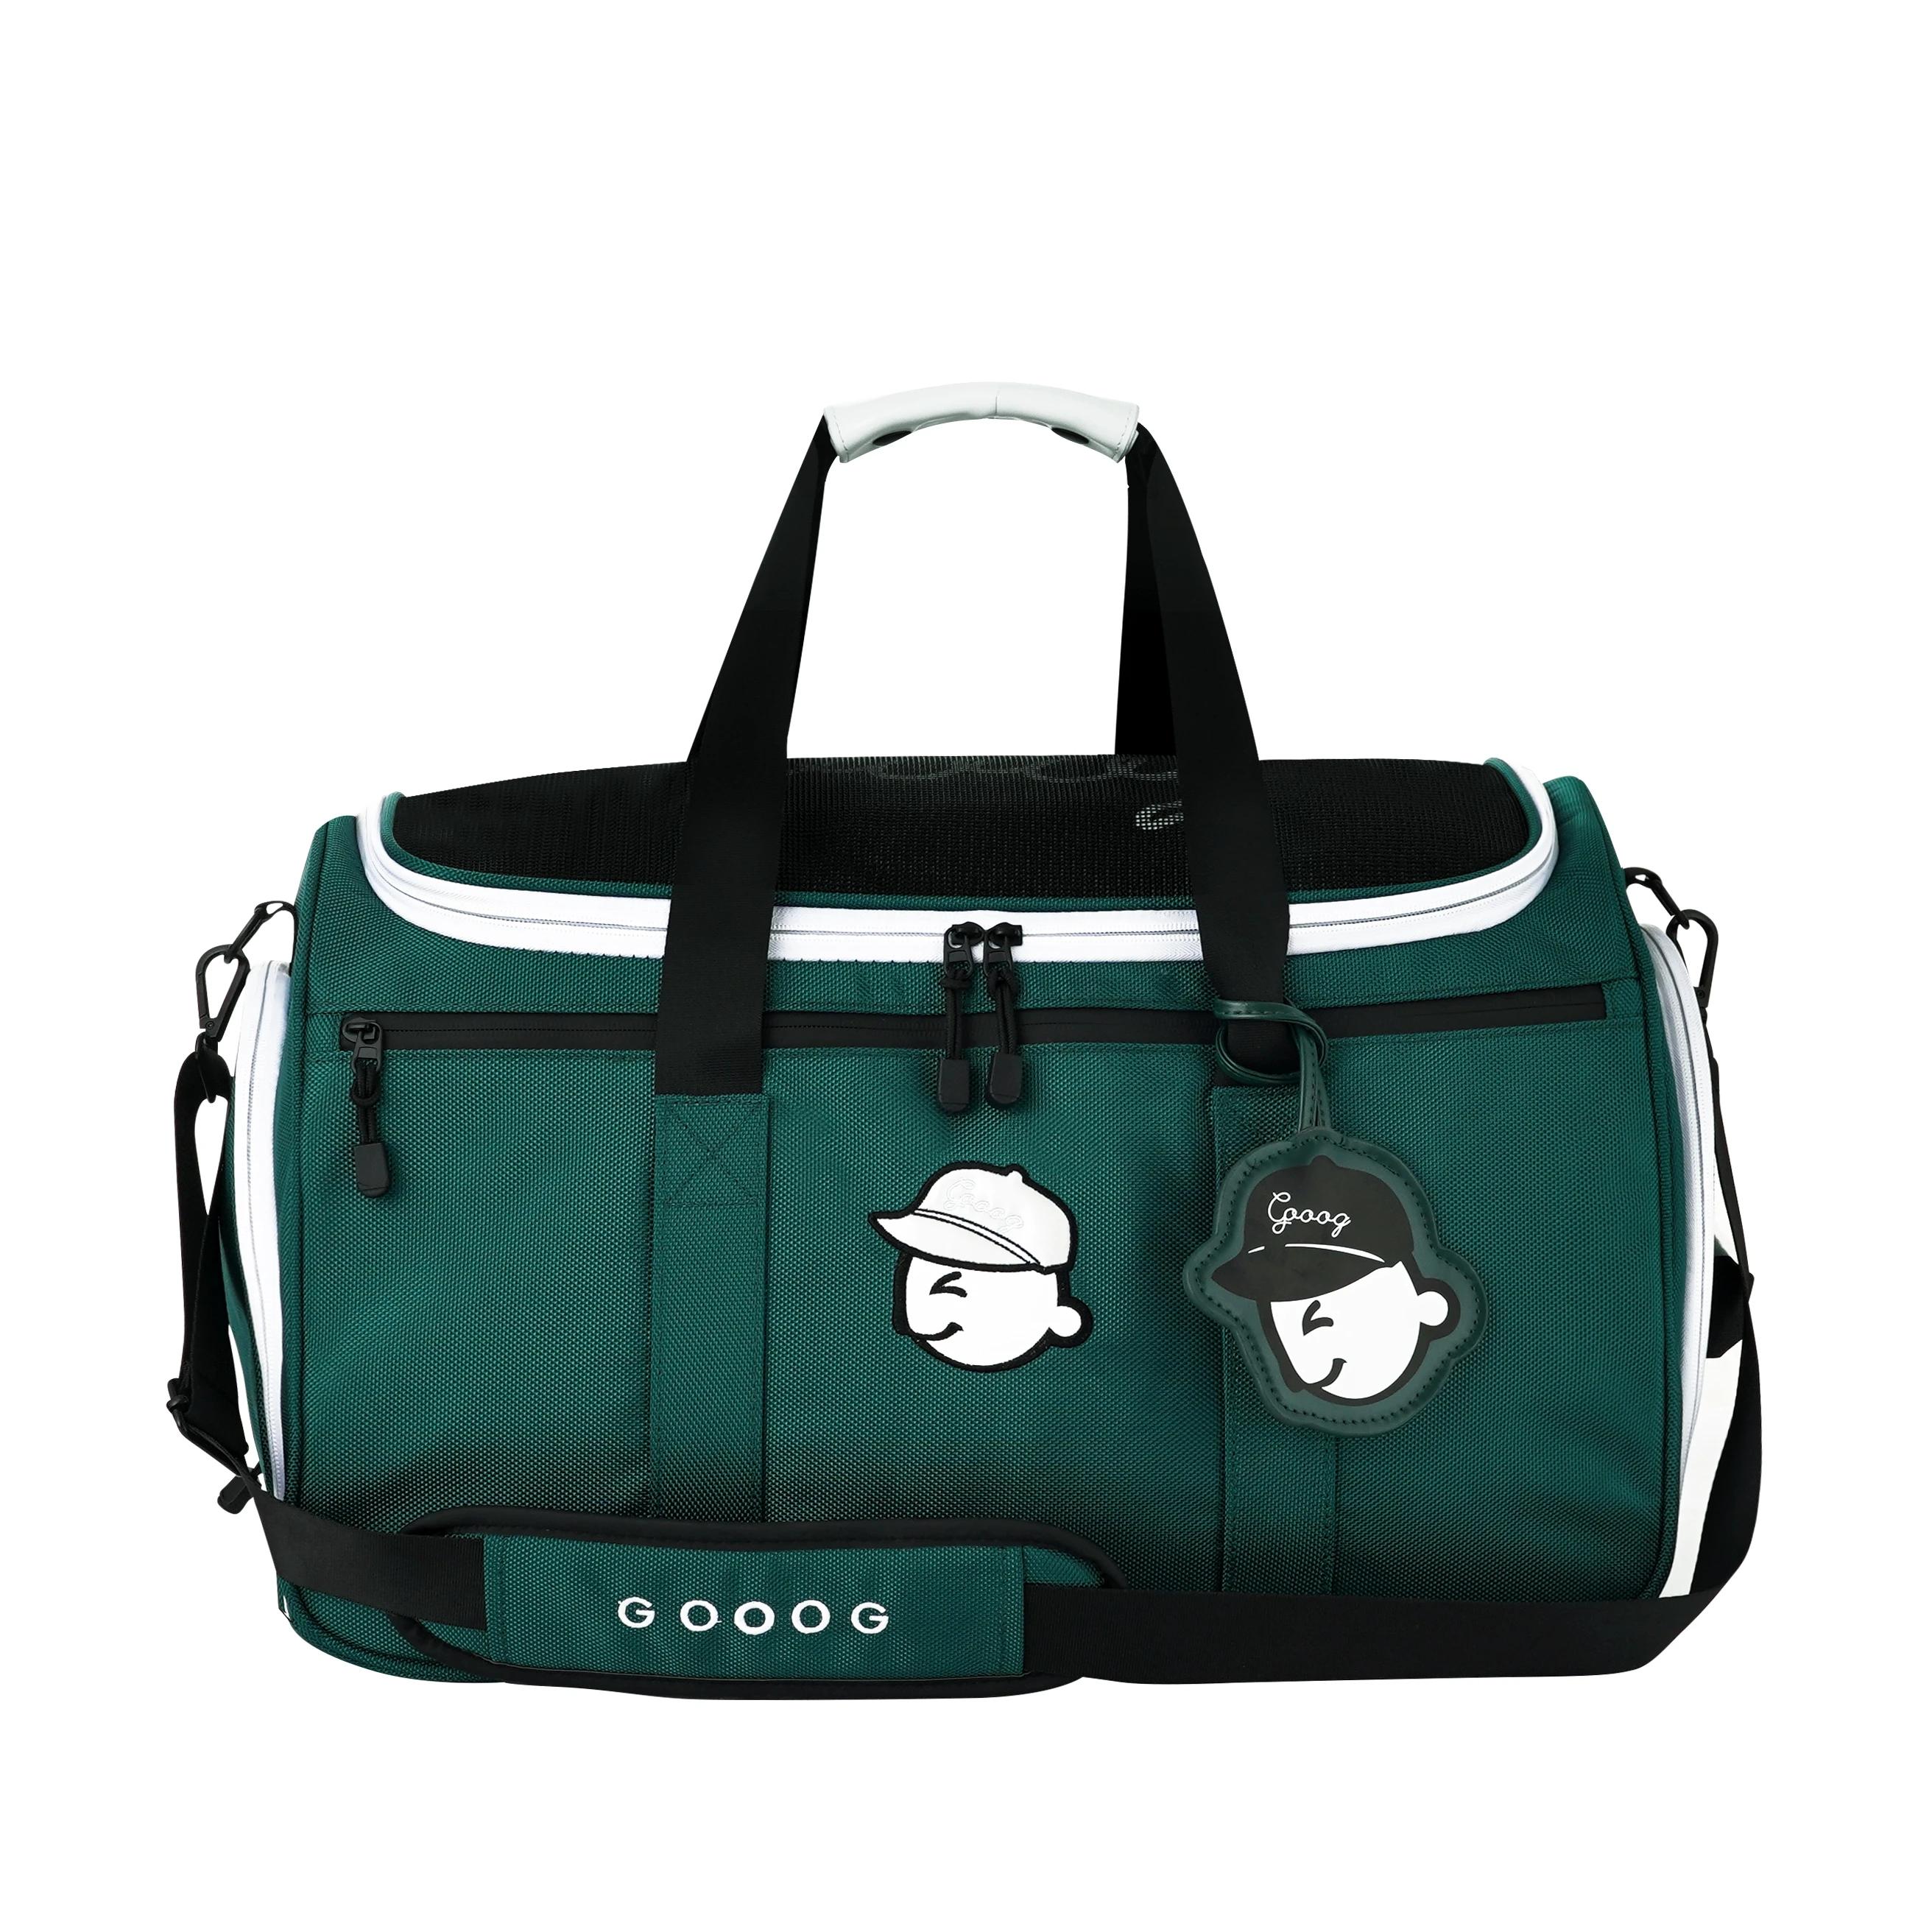 （참고: 그림은 실물과 같습니다.）남녀공용 골프 의류 신발 가방, 클래식 보스턴 핸드백 여행 가방, 녹색 패션